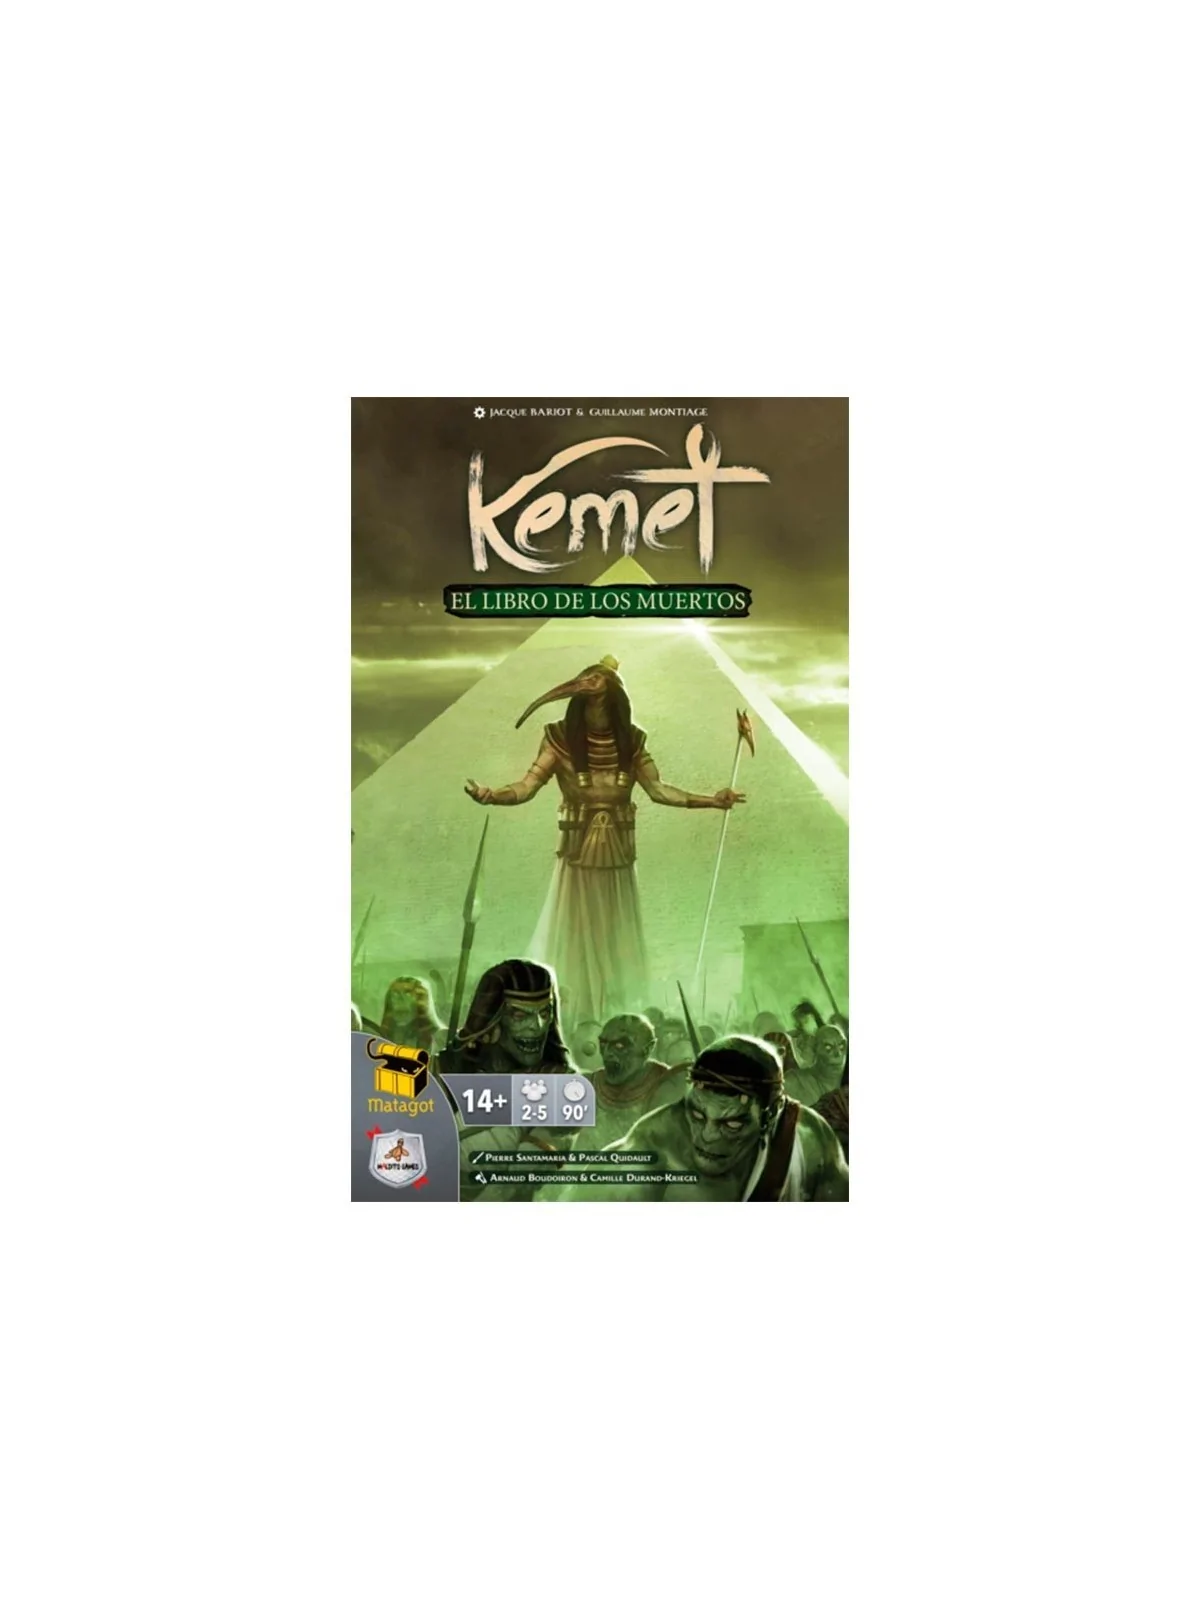 Comprar Kemet: El Libro de los Muertos barato al mejor precio 27,00 € 